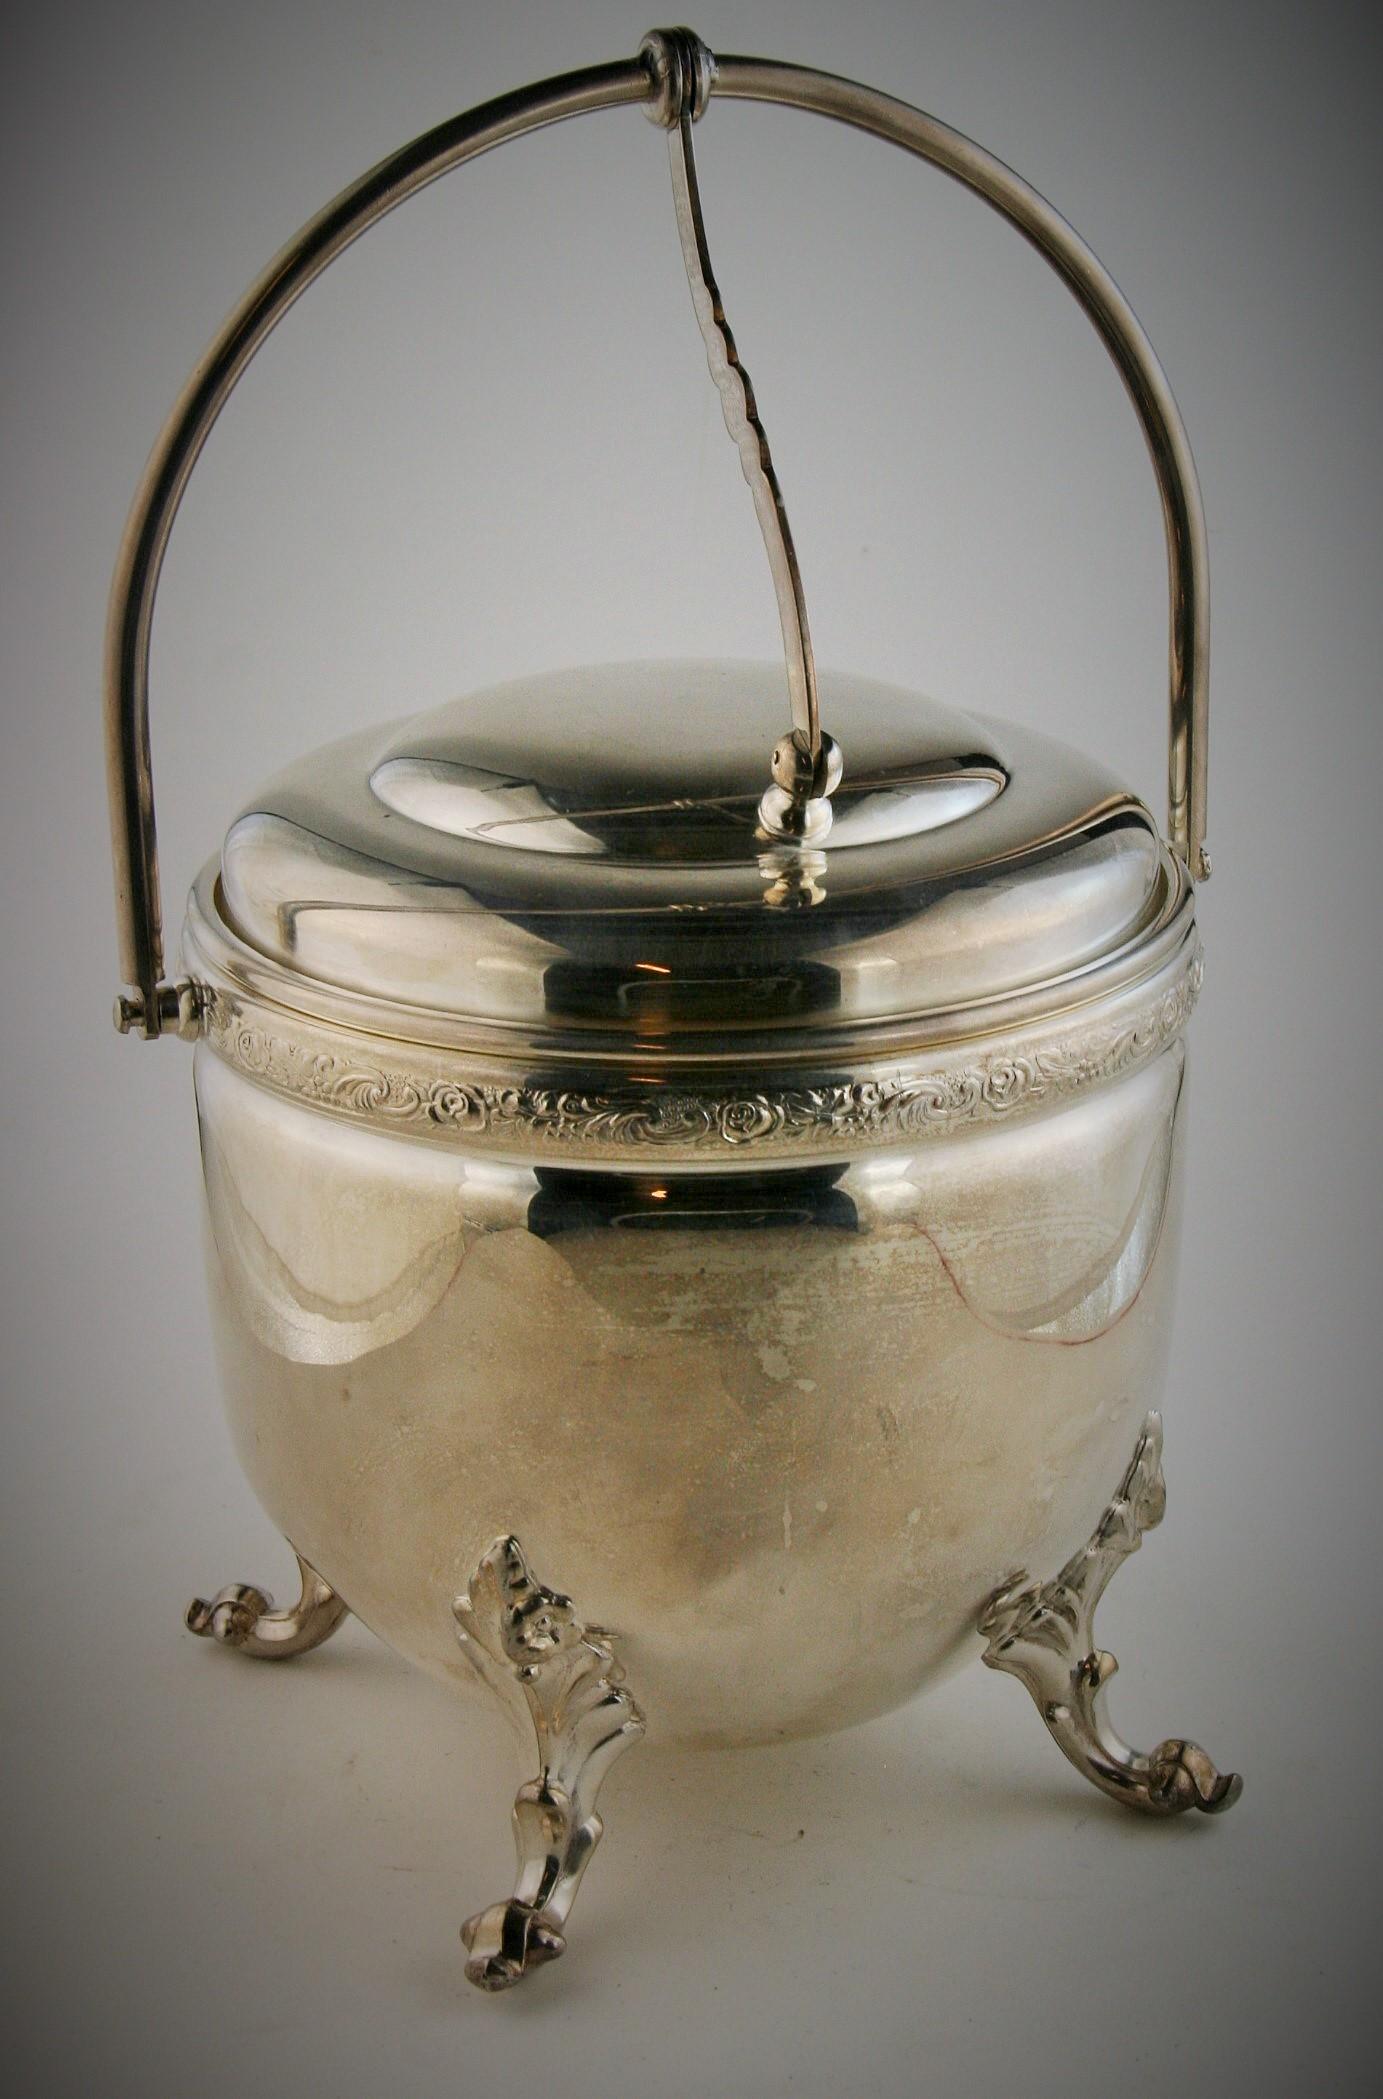 8-248 Seau à glace à pied en argent et cuivre avec couvercle rétractable et revêtement en verre, vers les années 1940.